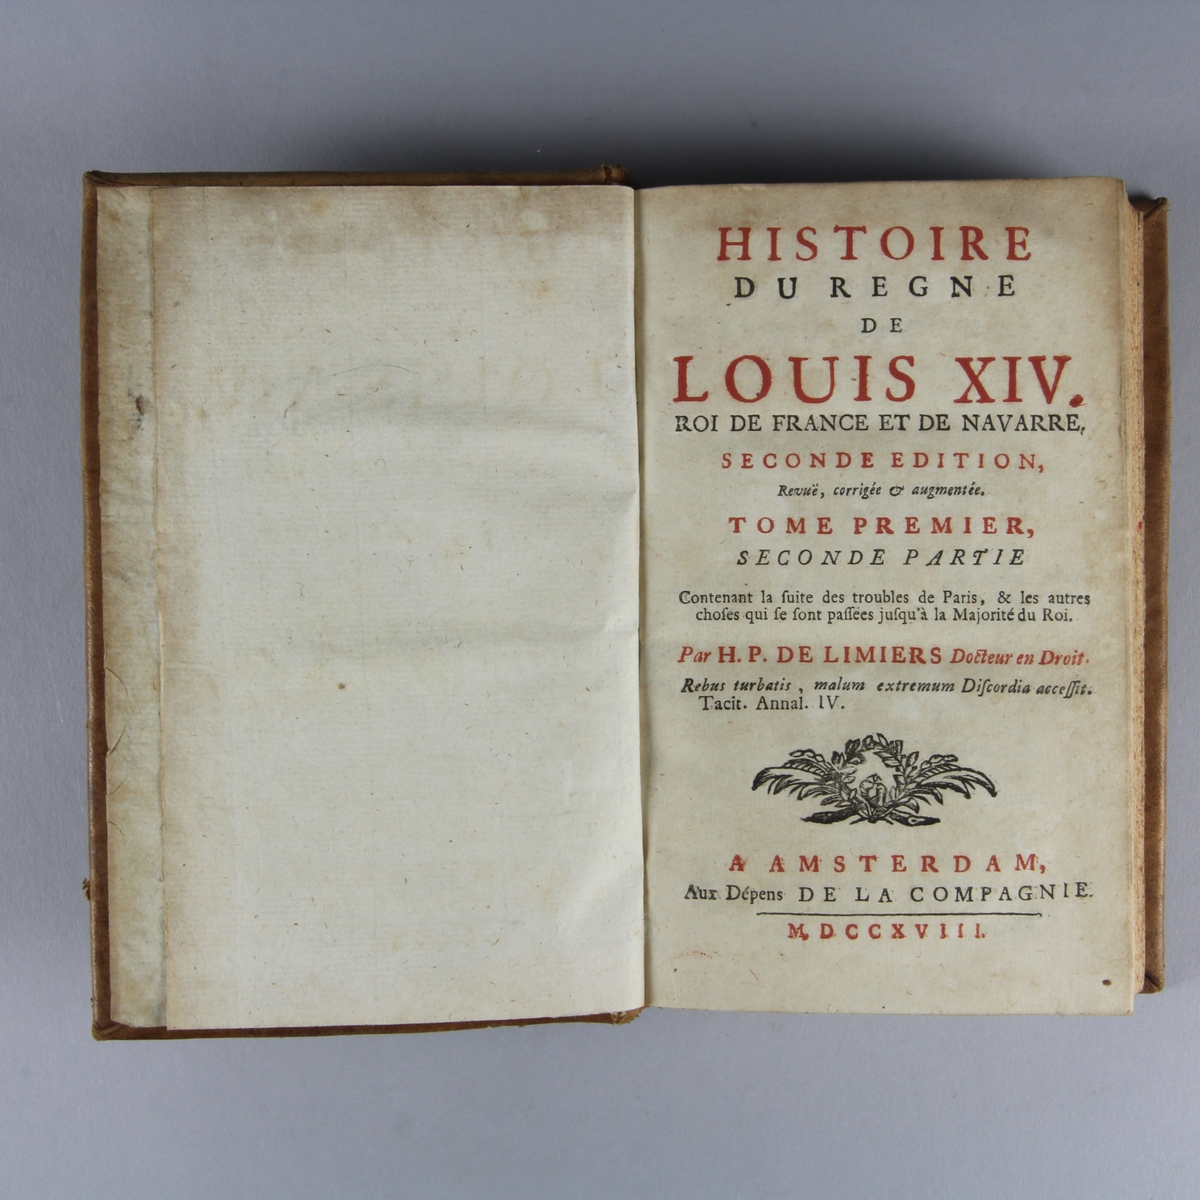 Bok, helfranskt band "Histoire du regne de Louis XIV" del 1:2. Skinnband med guldpräglad rygg i fem upphöjda bind, skuret rödstänkt snitt.